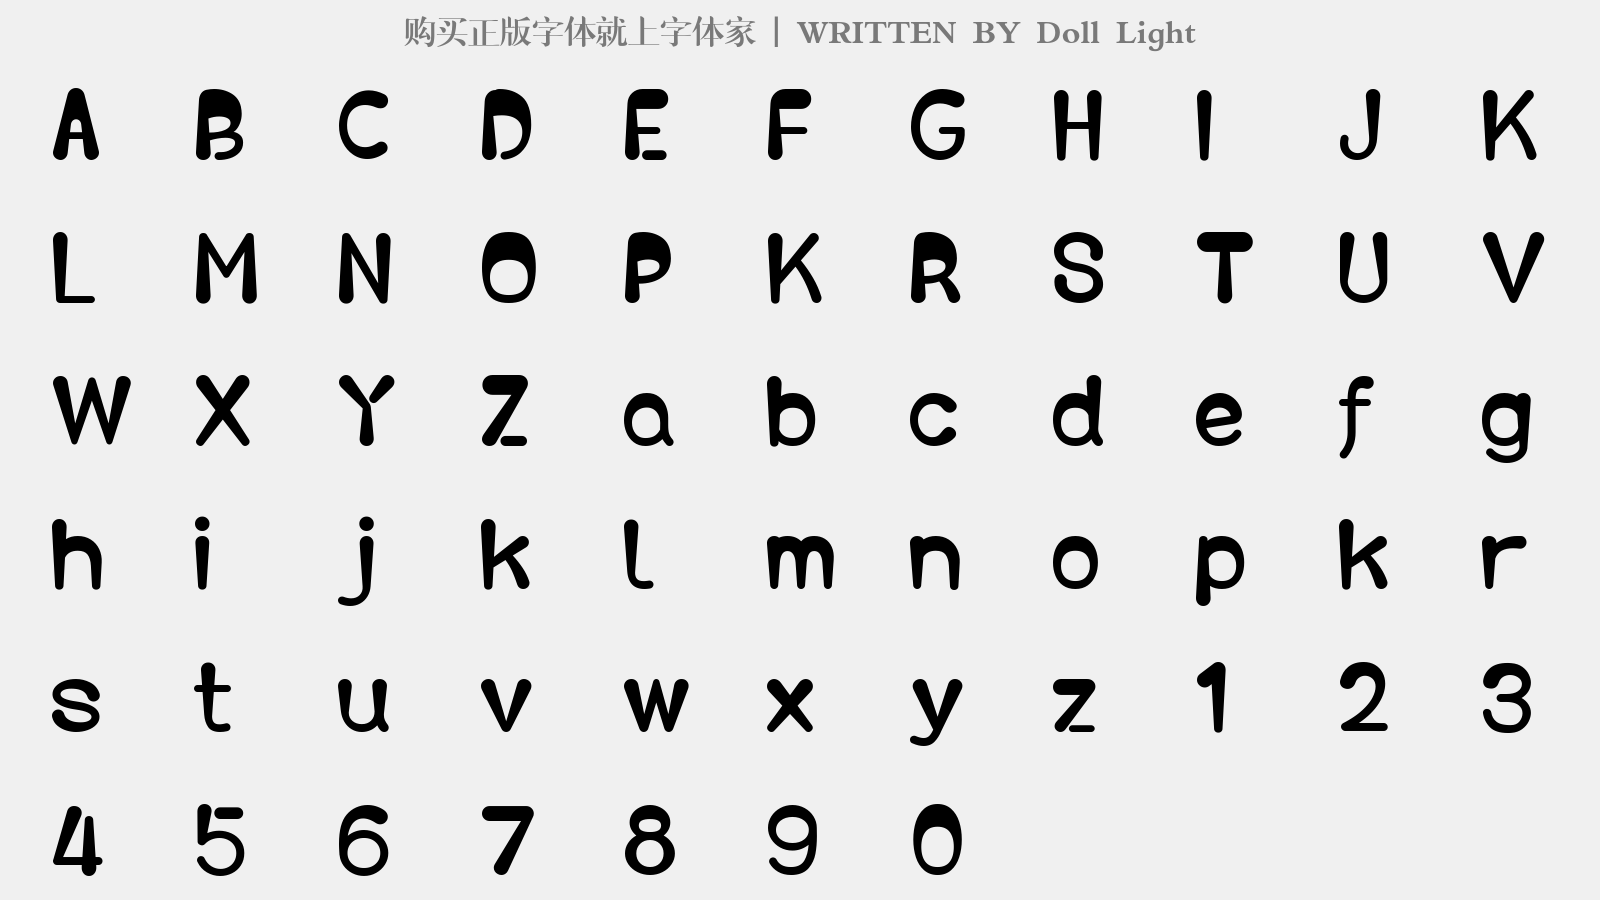 Doll Light - 大写字母/小写字母/数字